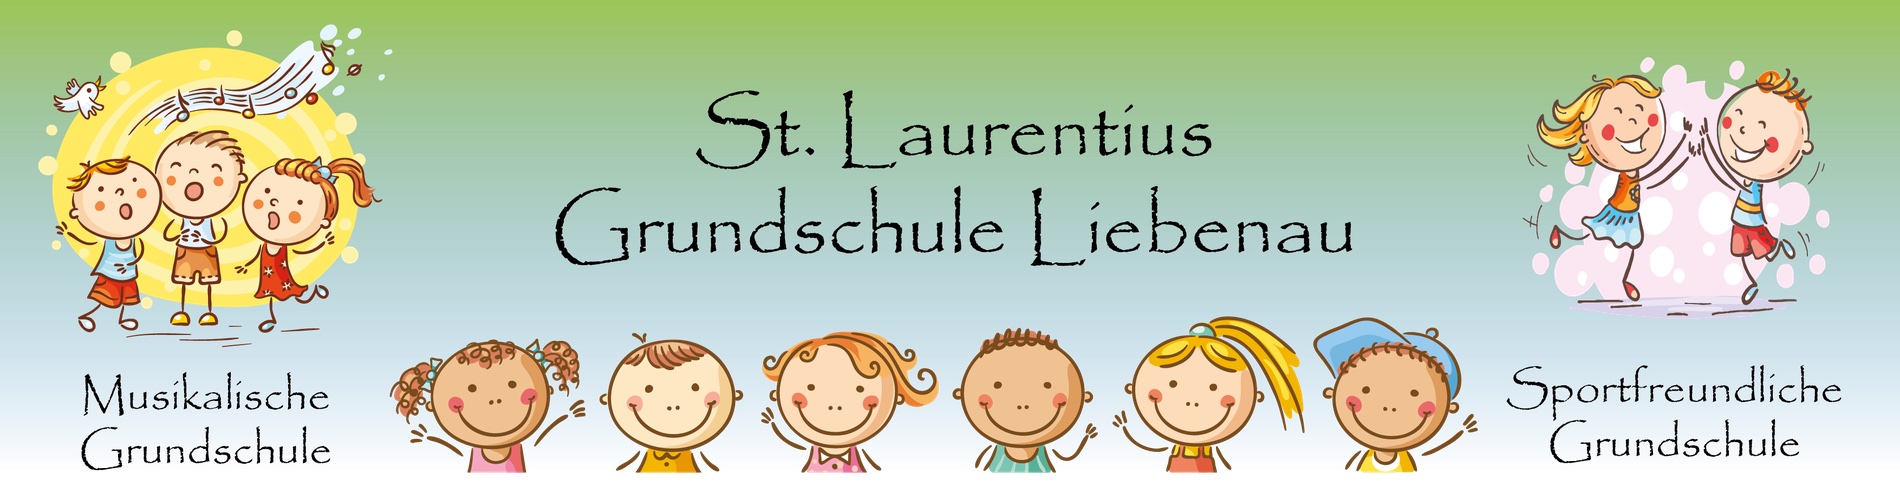 St.-Laurentius-Schule, Grundschule Liebenau